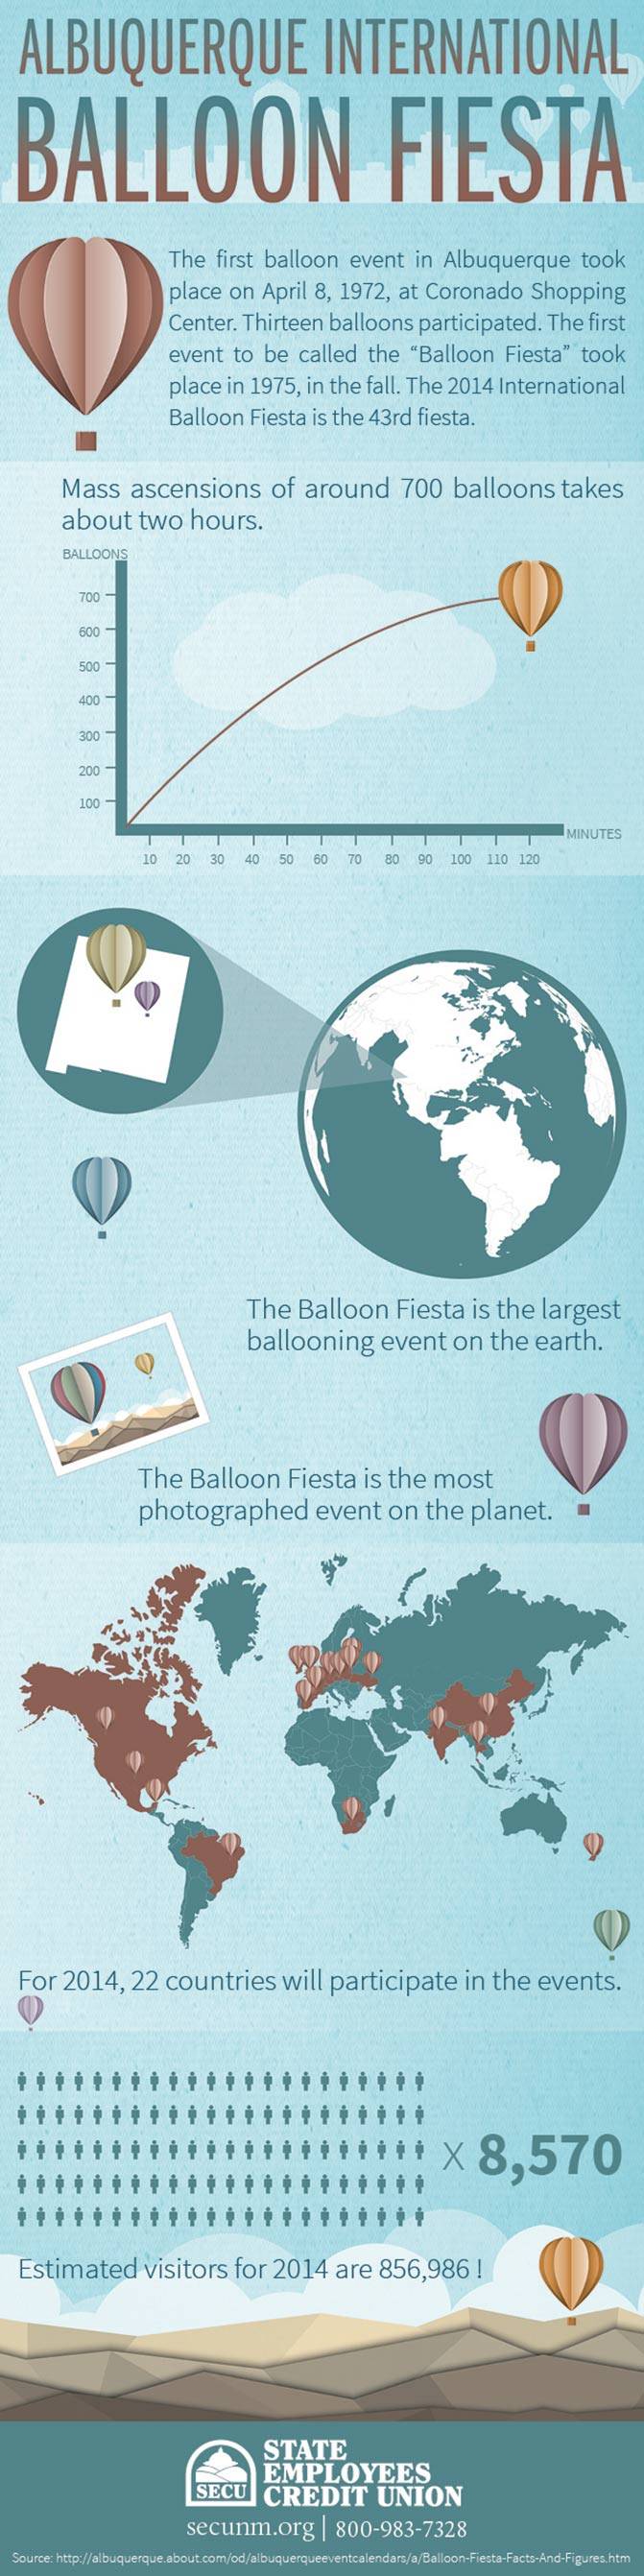 2014-Balloon-Fiesta-New-Mexico